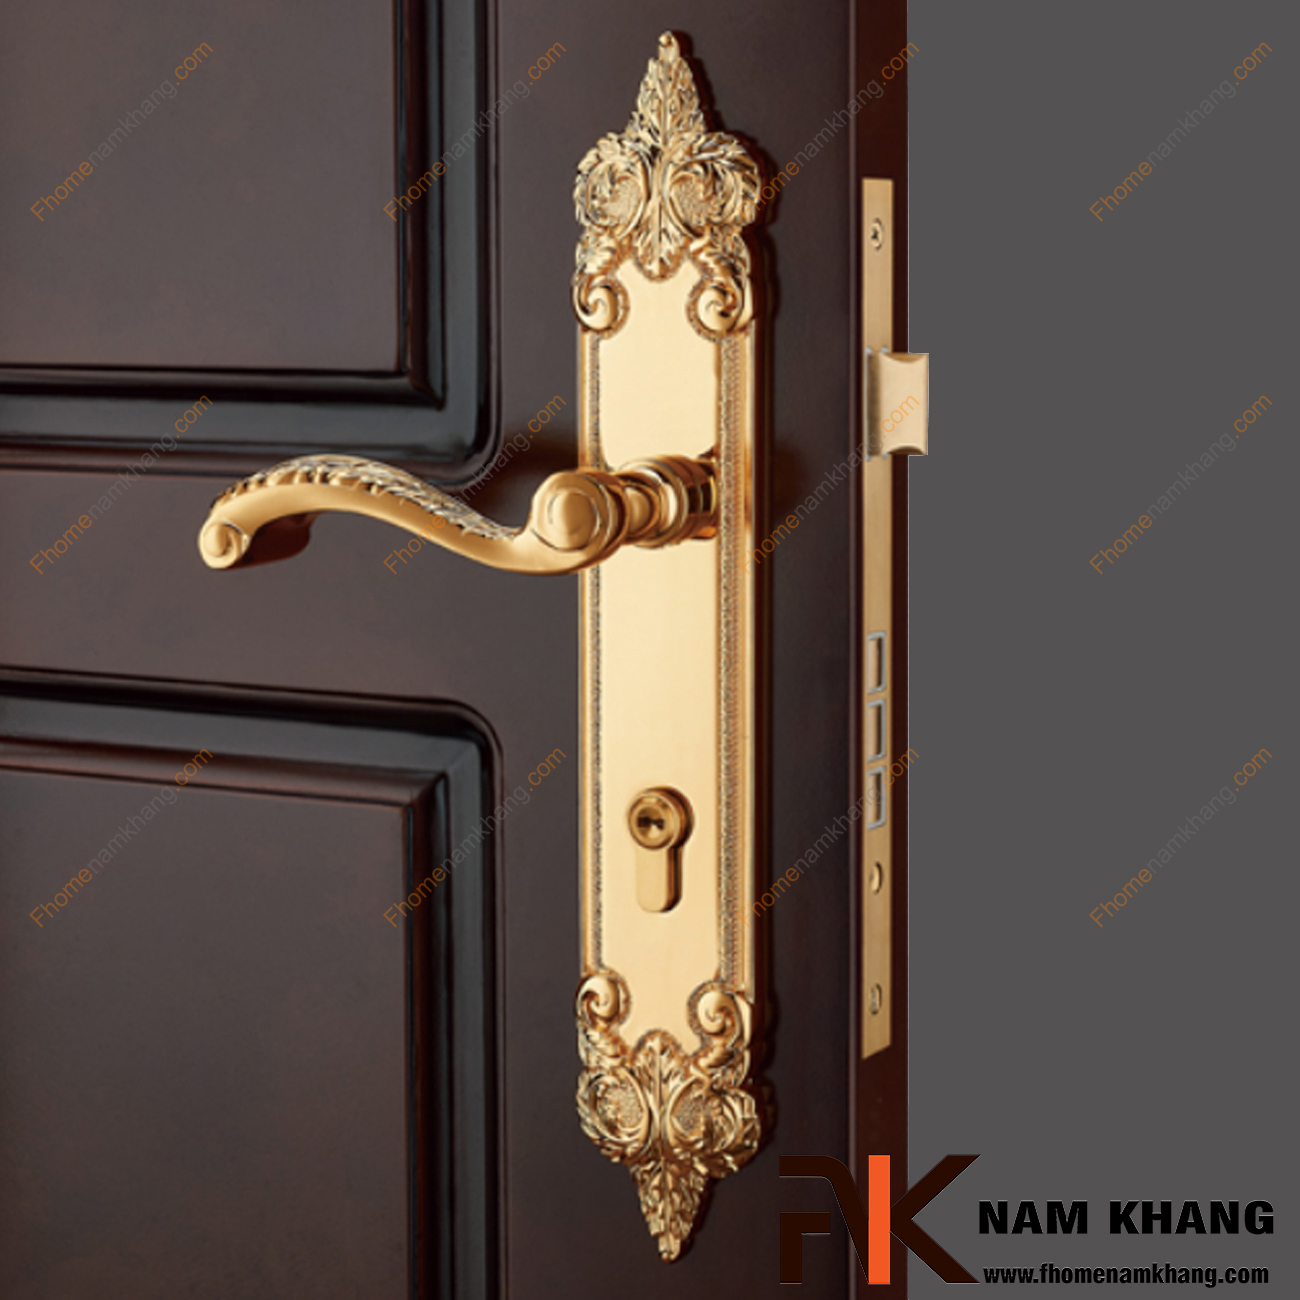 Khóa cửa chính bằng đồng cao cấp mạ vàng NK314L-24K, sản phẩm khóa cửa cao cấp thường sử dụng trên các dạng cửa gỗ và nhiều dạng cửa với các chất liệu khác.